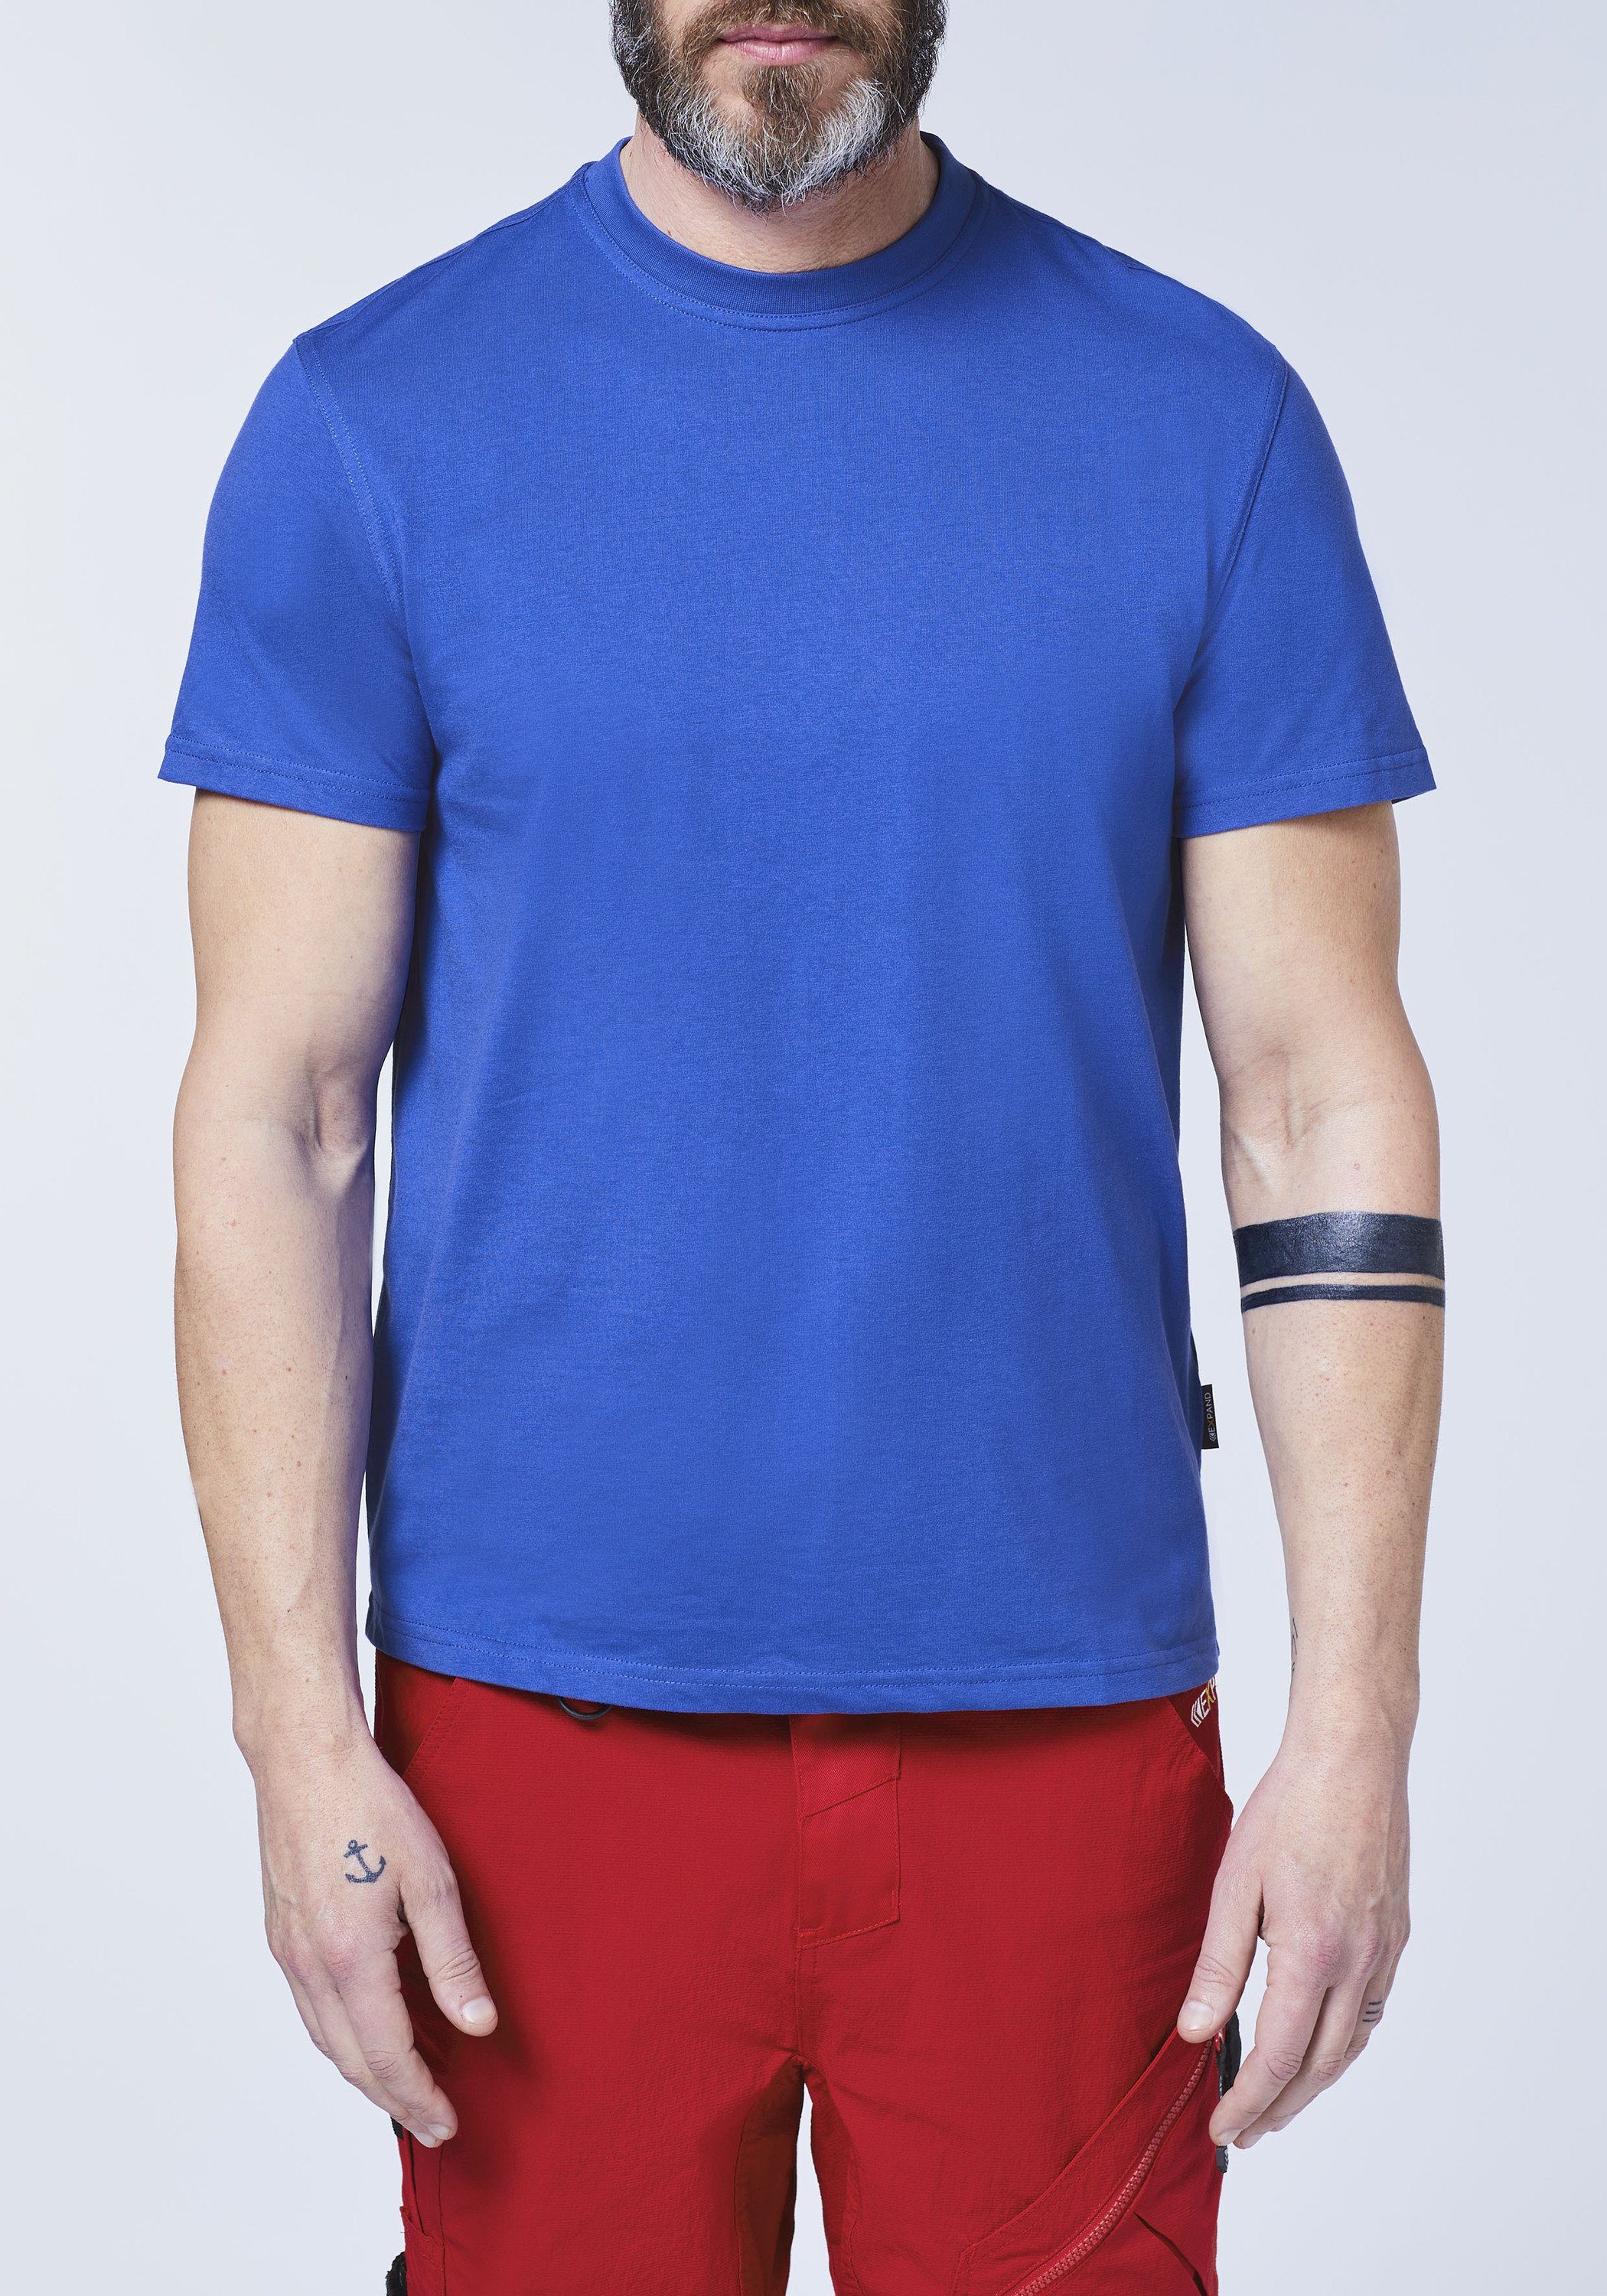 Übergröße in Expand T-Shirt ultramarinblau